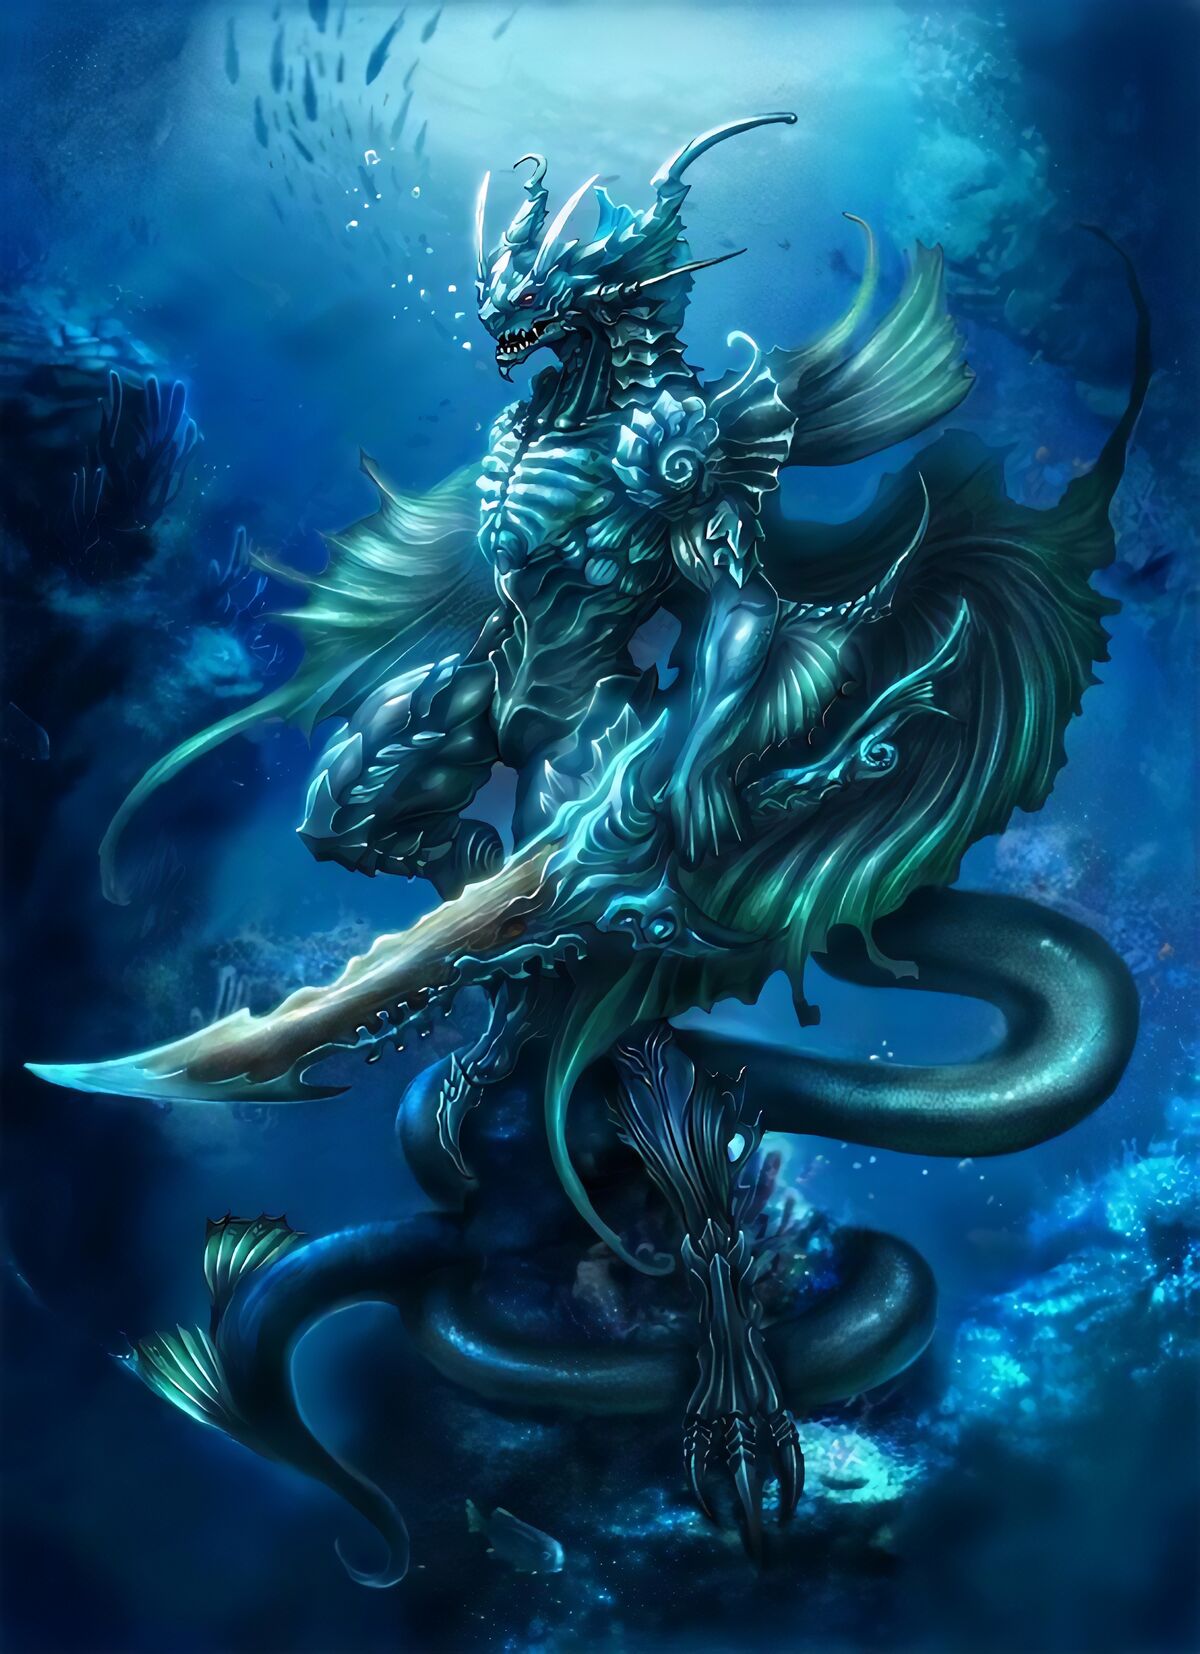 Хранительница для короля драконов. Морской дракон (Draco Marinus). АПАЛАЛА дракон. Нешимирон демон рыбы. Водные существа фэнтези.